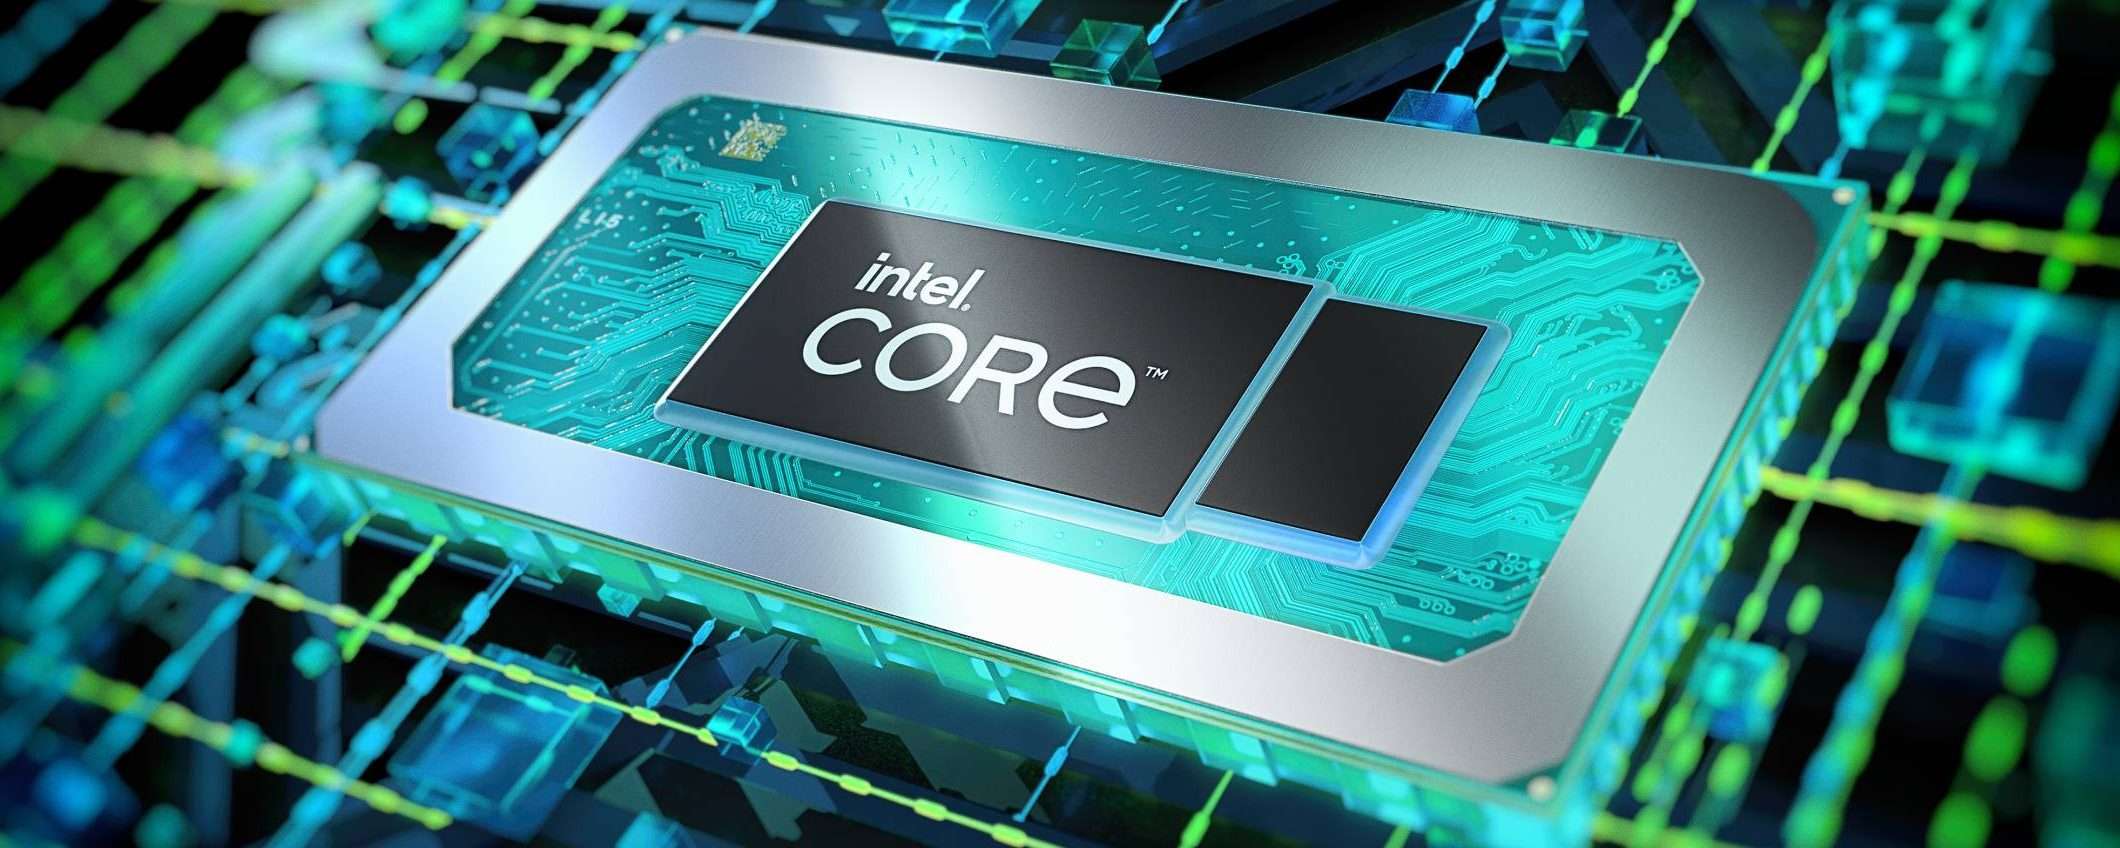 Intel non può vendere alcune CPU in Germania